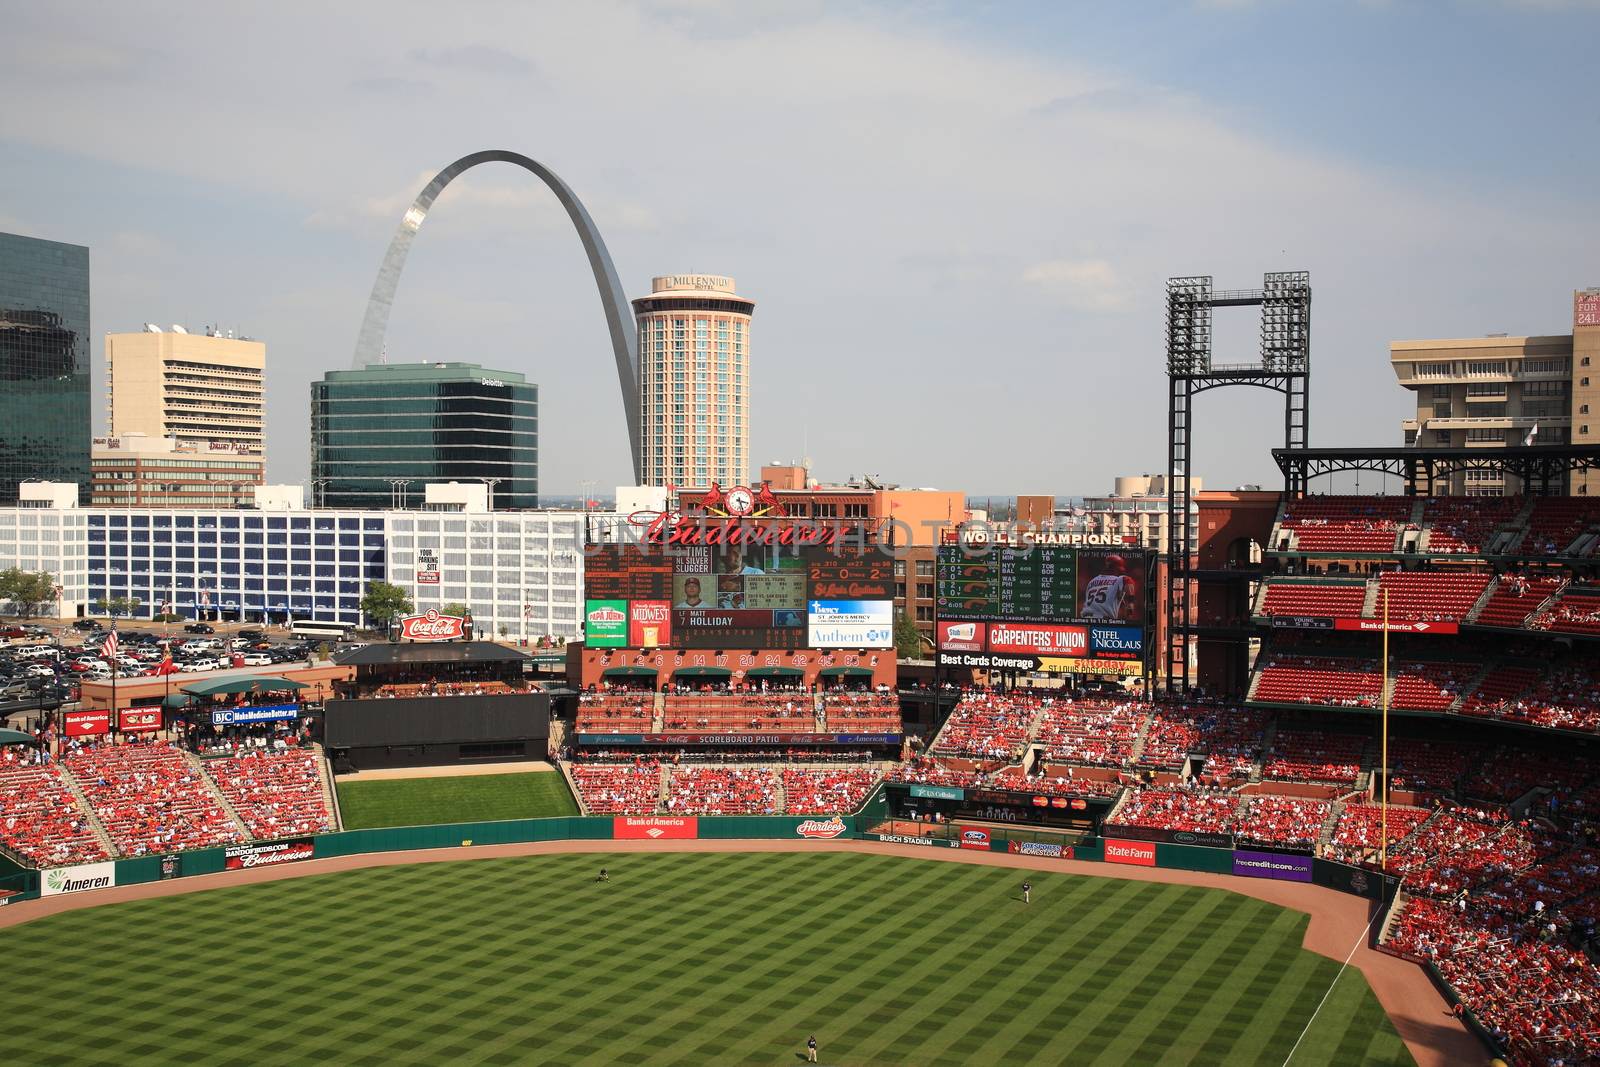 Busch Stadium - St. Louis Cardinals by Ffooter